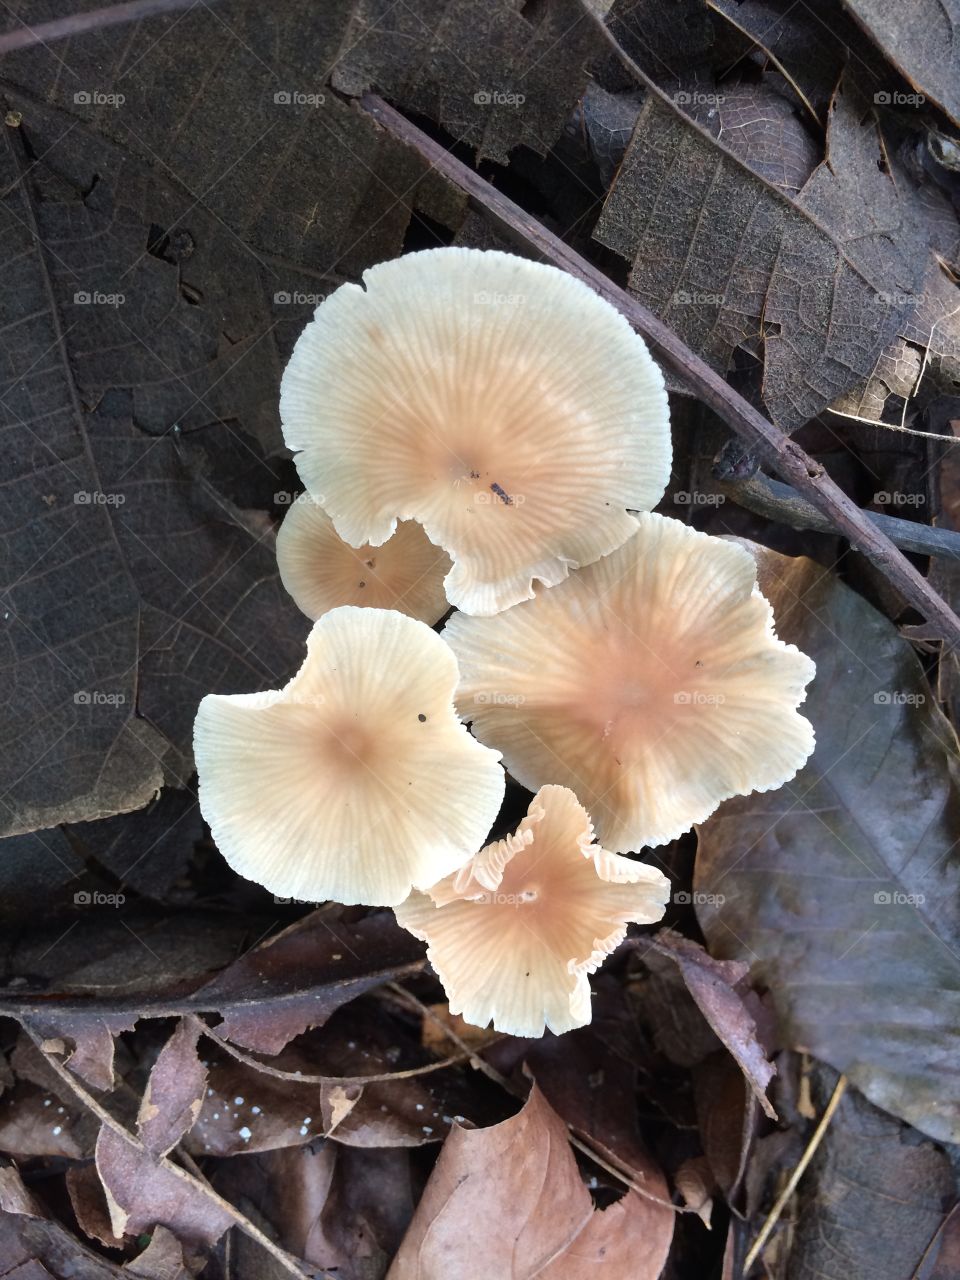 jamur cantik